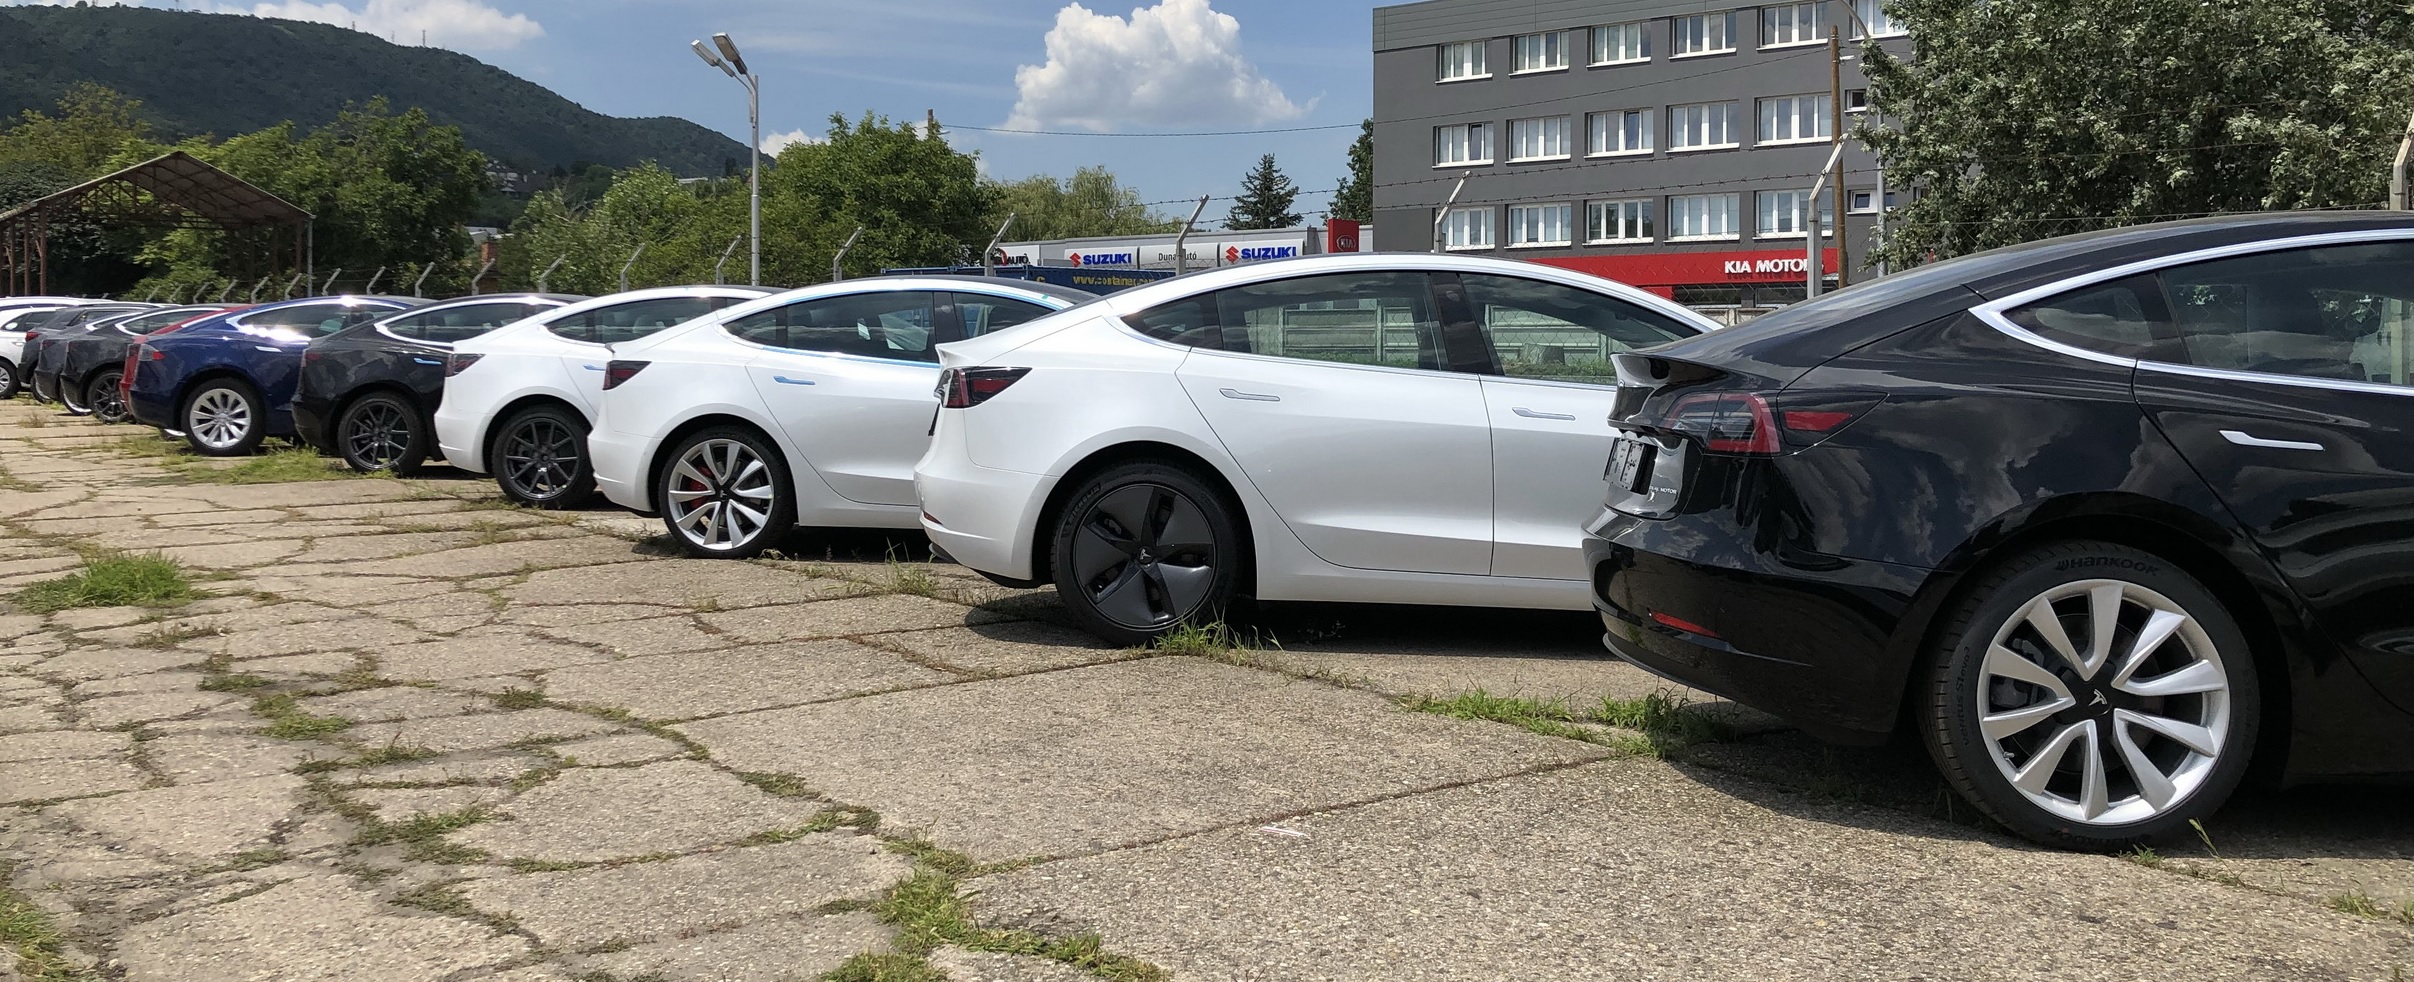 Letarolta A Teljes Holland Autopiacot A Tesla Model 3 Juniusban E Cars Hu